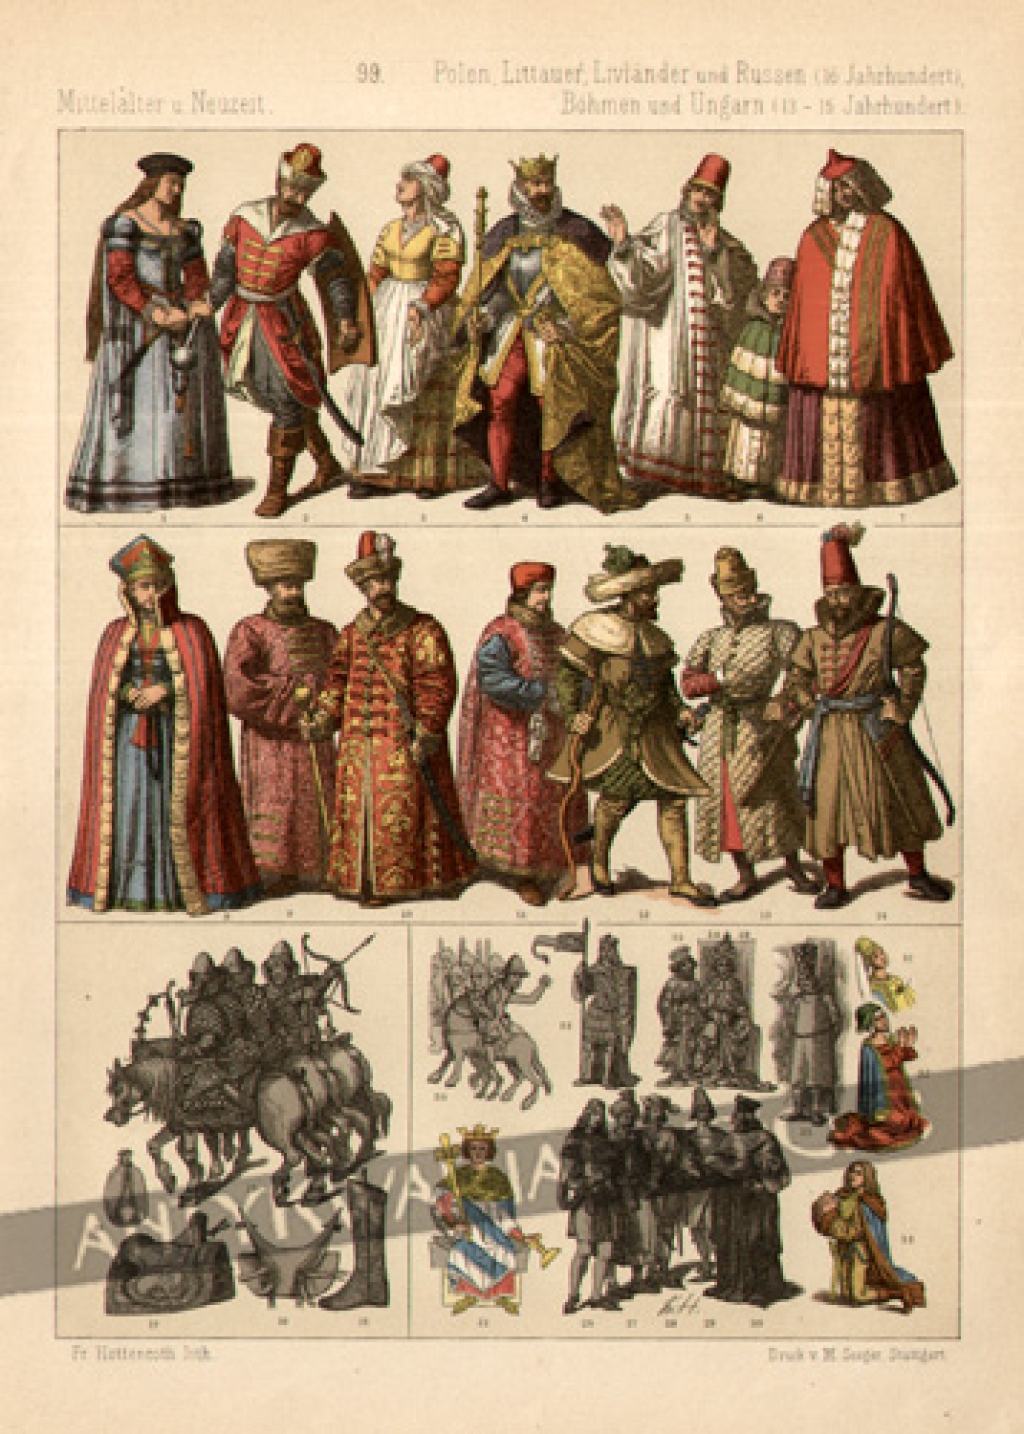 [rycina, 1891] [Typy ubiorów w Polsce i Europie Wschodniej XIII-XVI w.] Polen, Livlander und Russen, Bohmen und Ungarn (13 - 16 Jahrhundert)